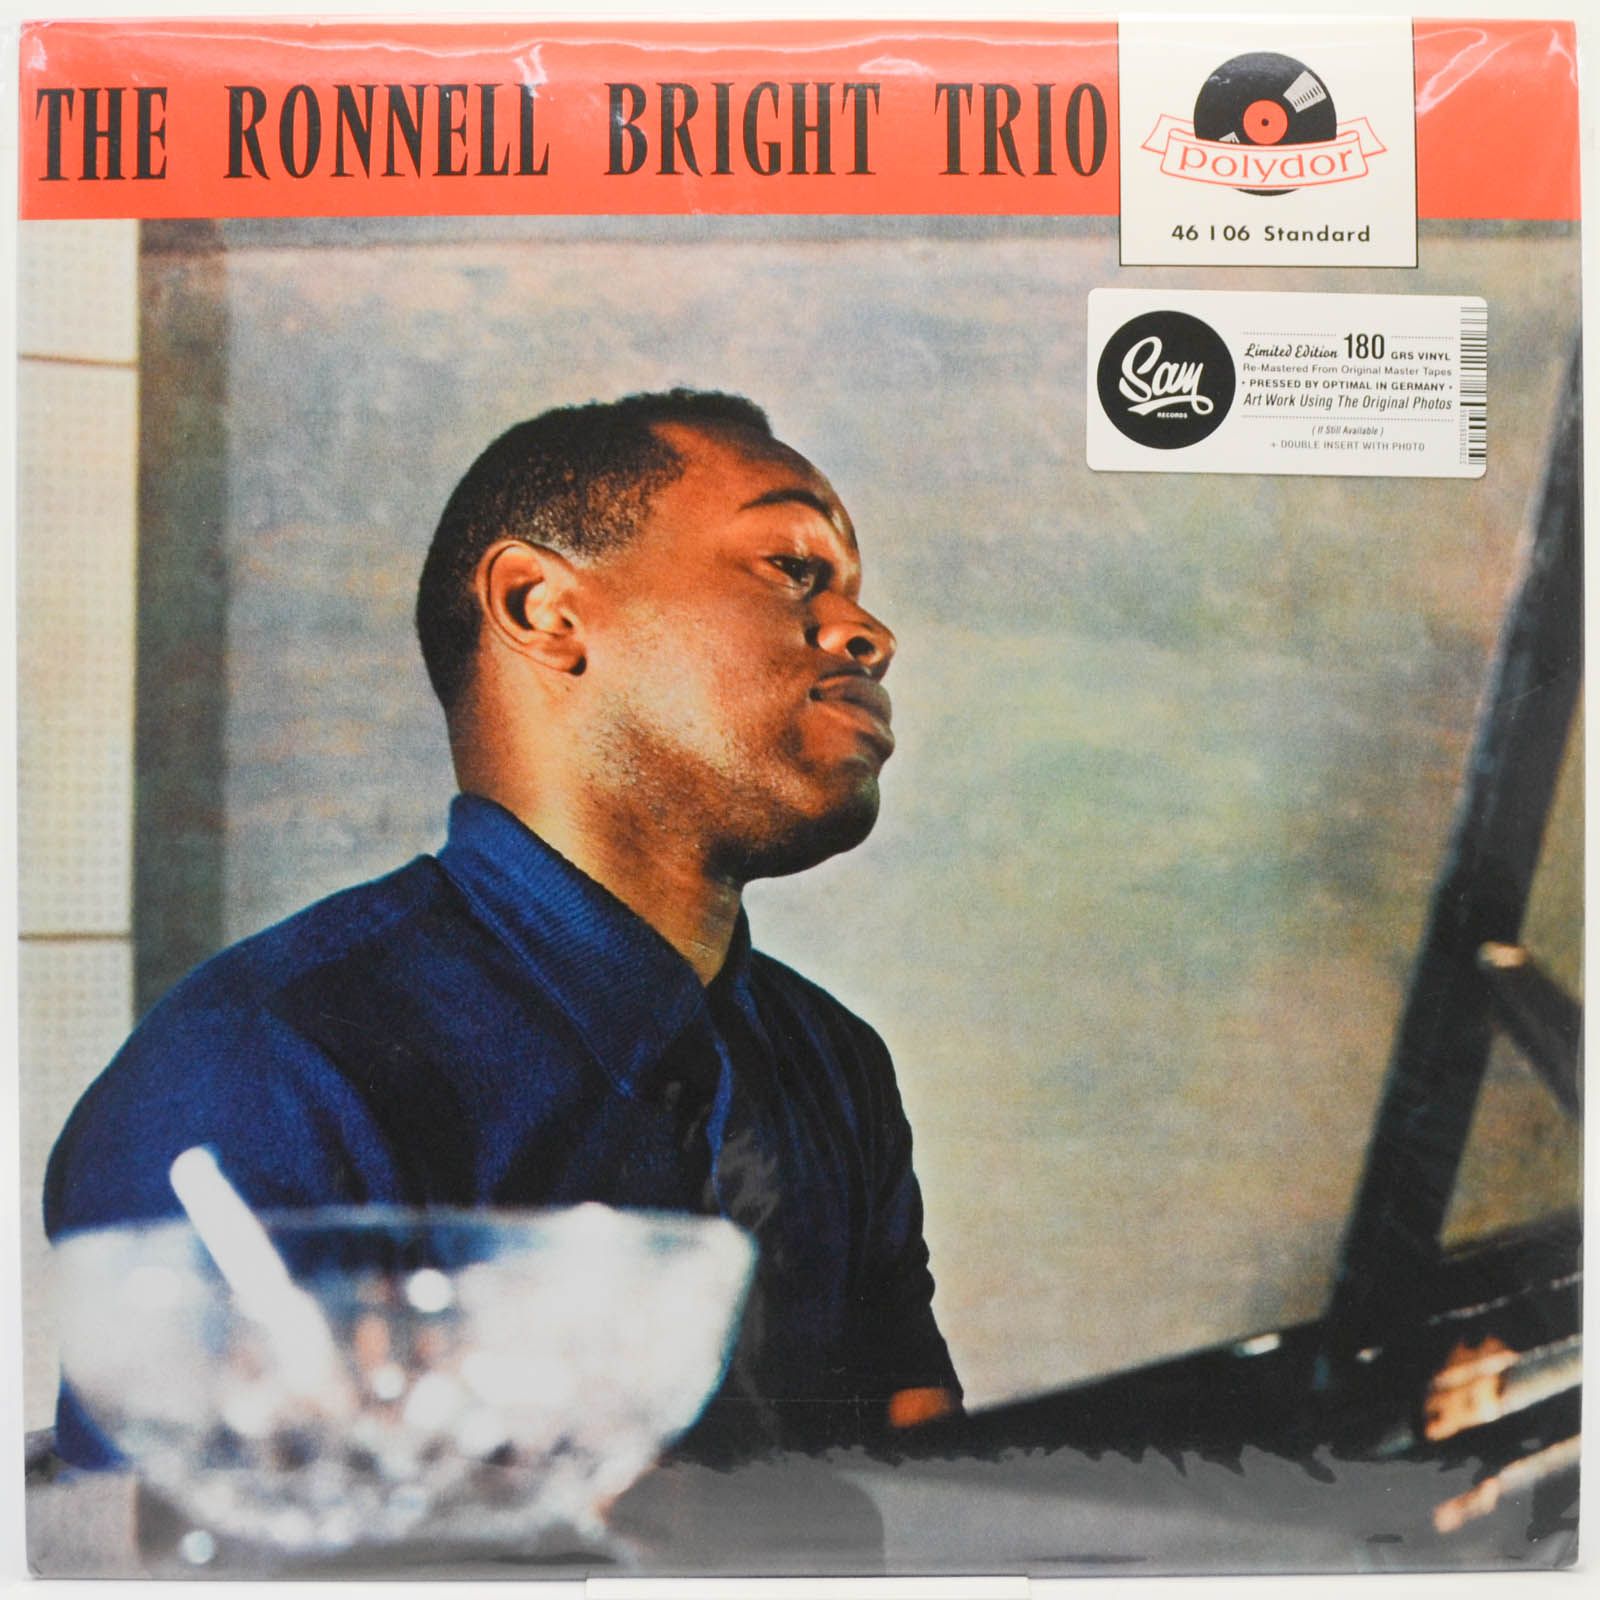 Ronnell Bright Trio — The Ronnell Bright Trio, 1958